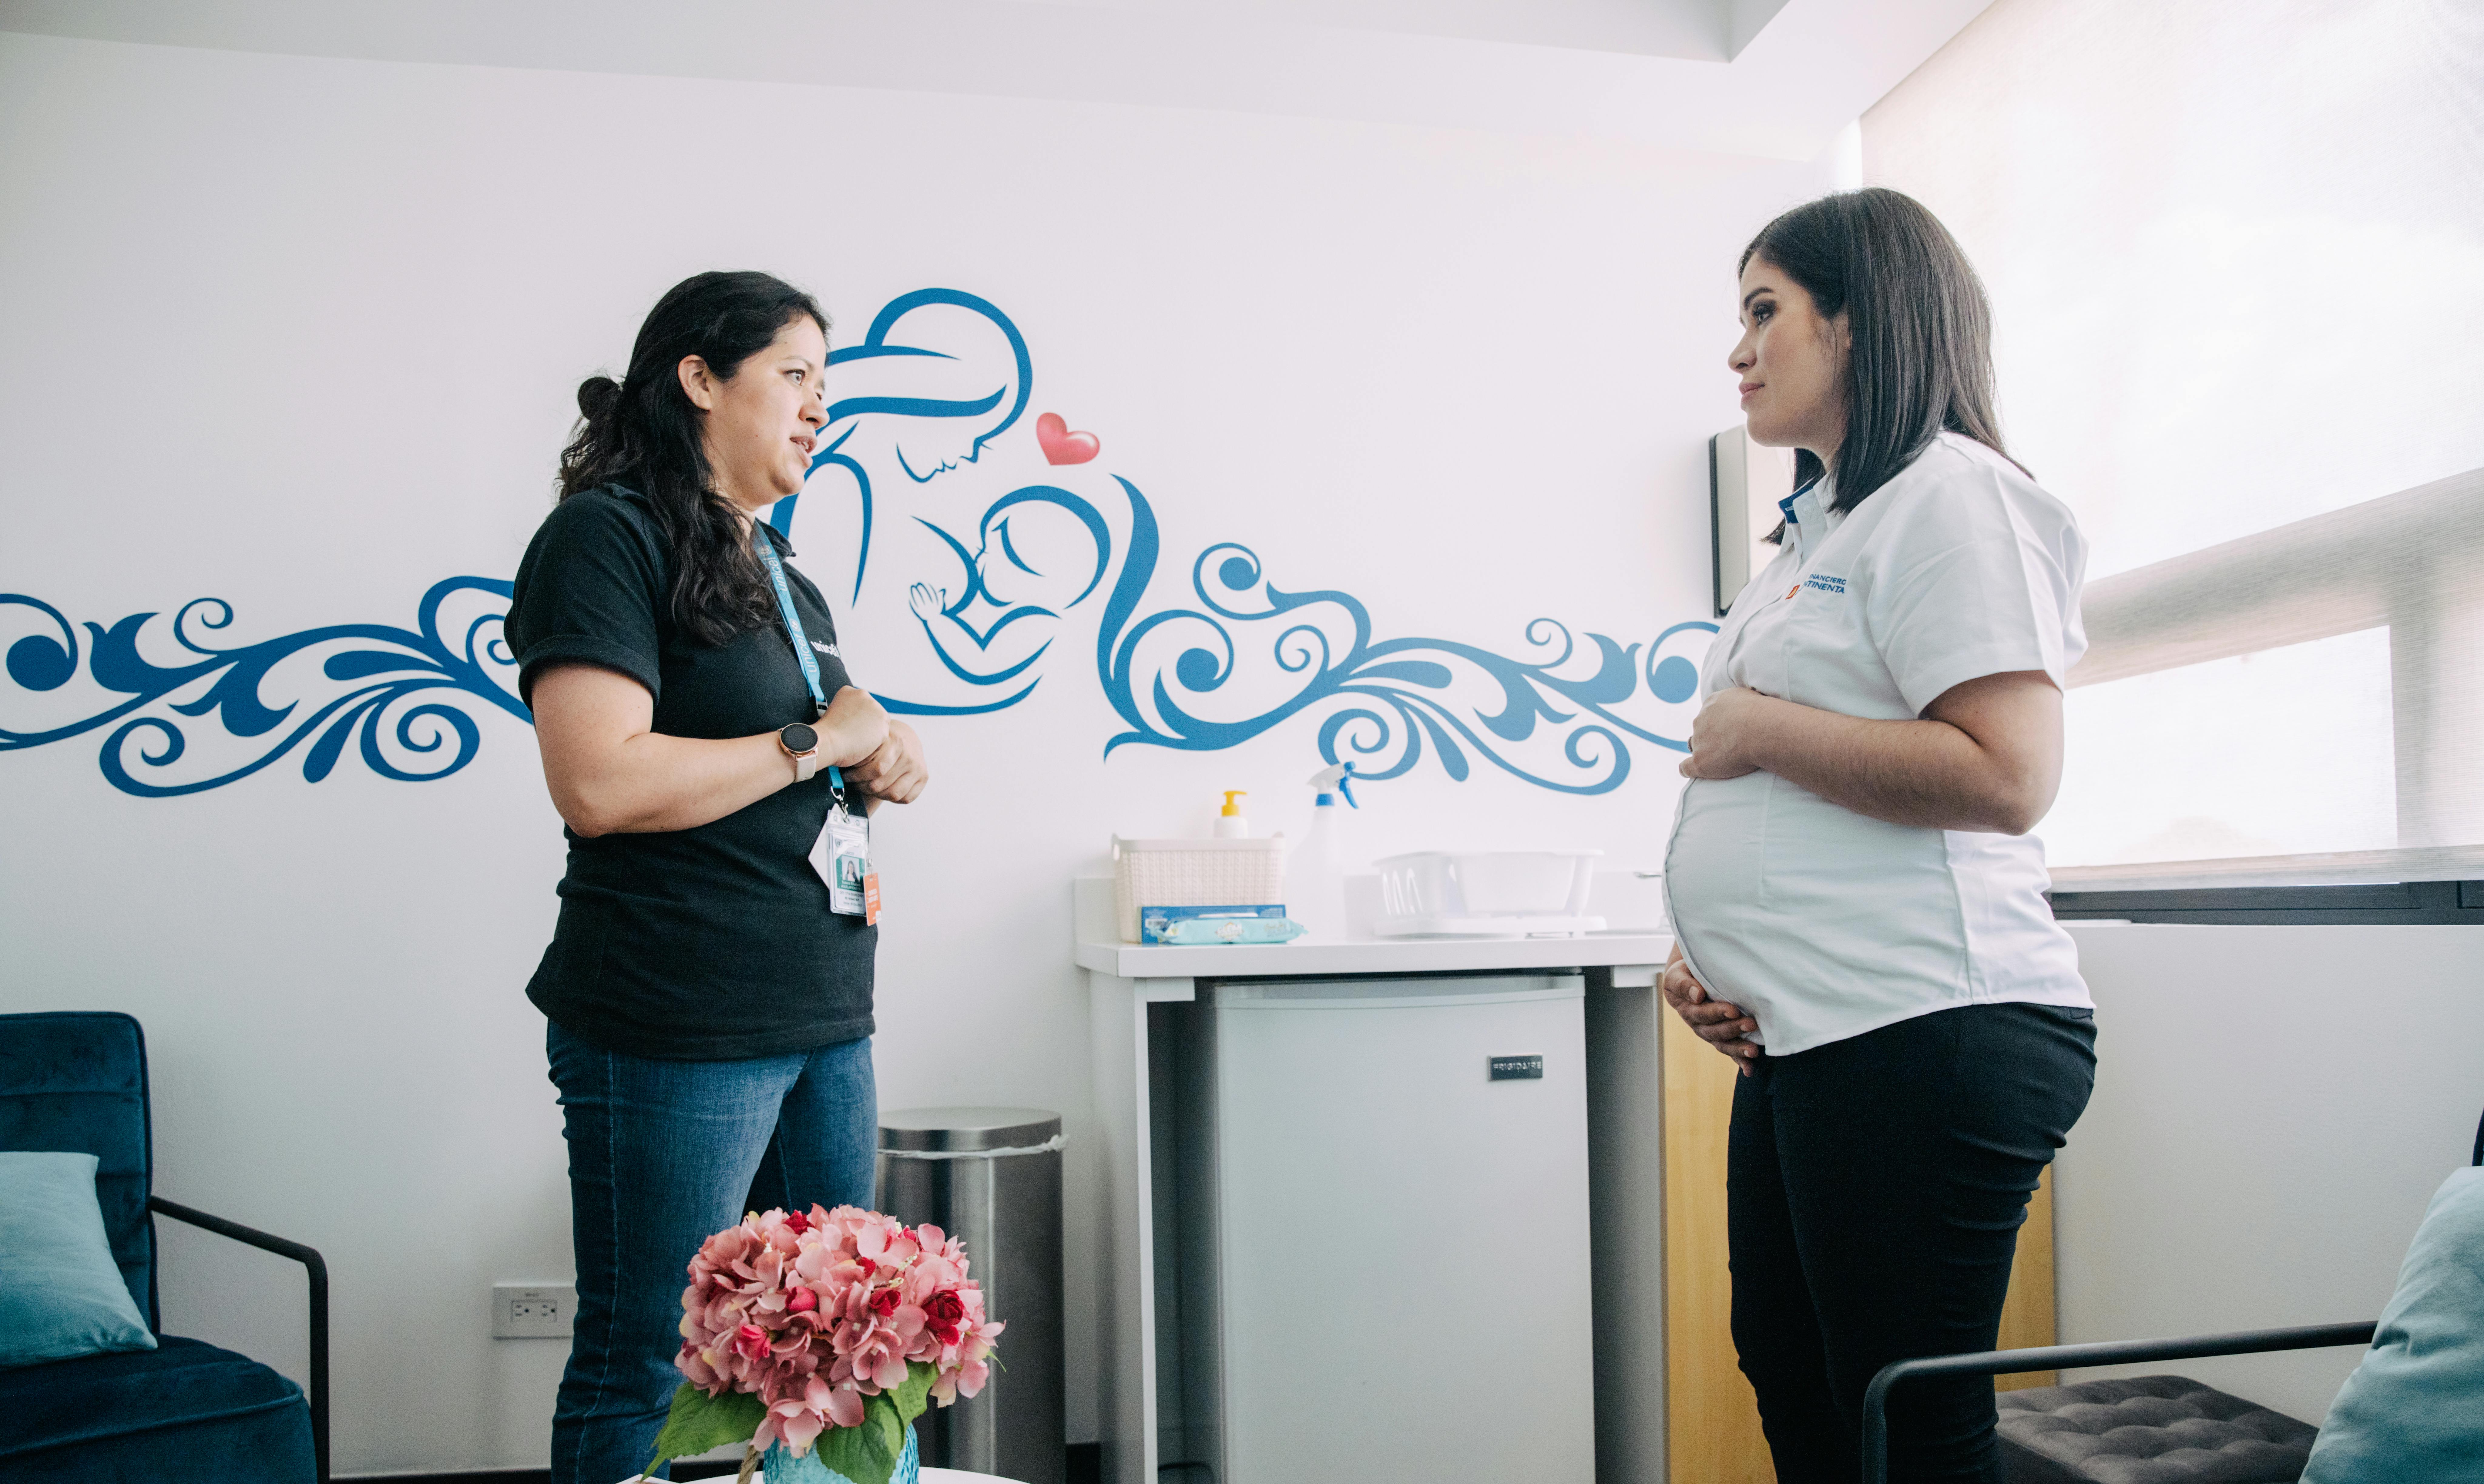 Guatemala, Susana Aguilar dello staff nutrizionale dell'UNICEF visita lo spazio per l'allattamento al seno della banca G&T a Città del Guatemala. In quell'occasione discute con Gracetel Sarceño (29 anni) di allattamento e lavoro